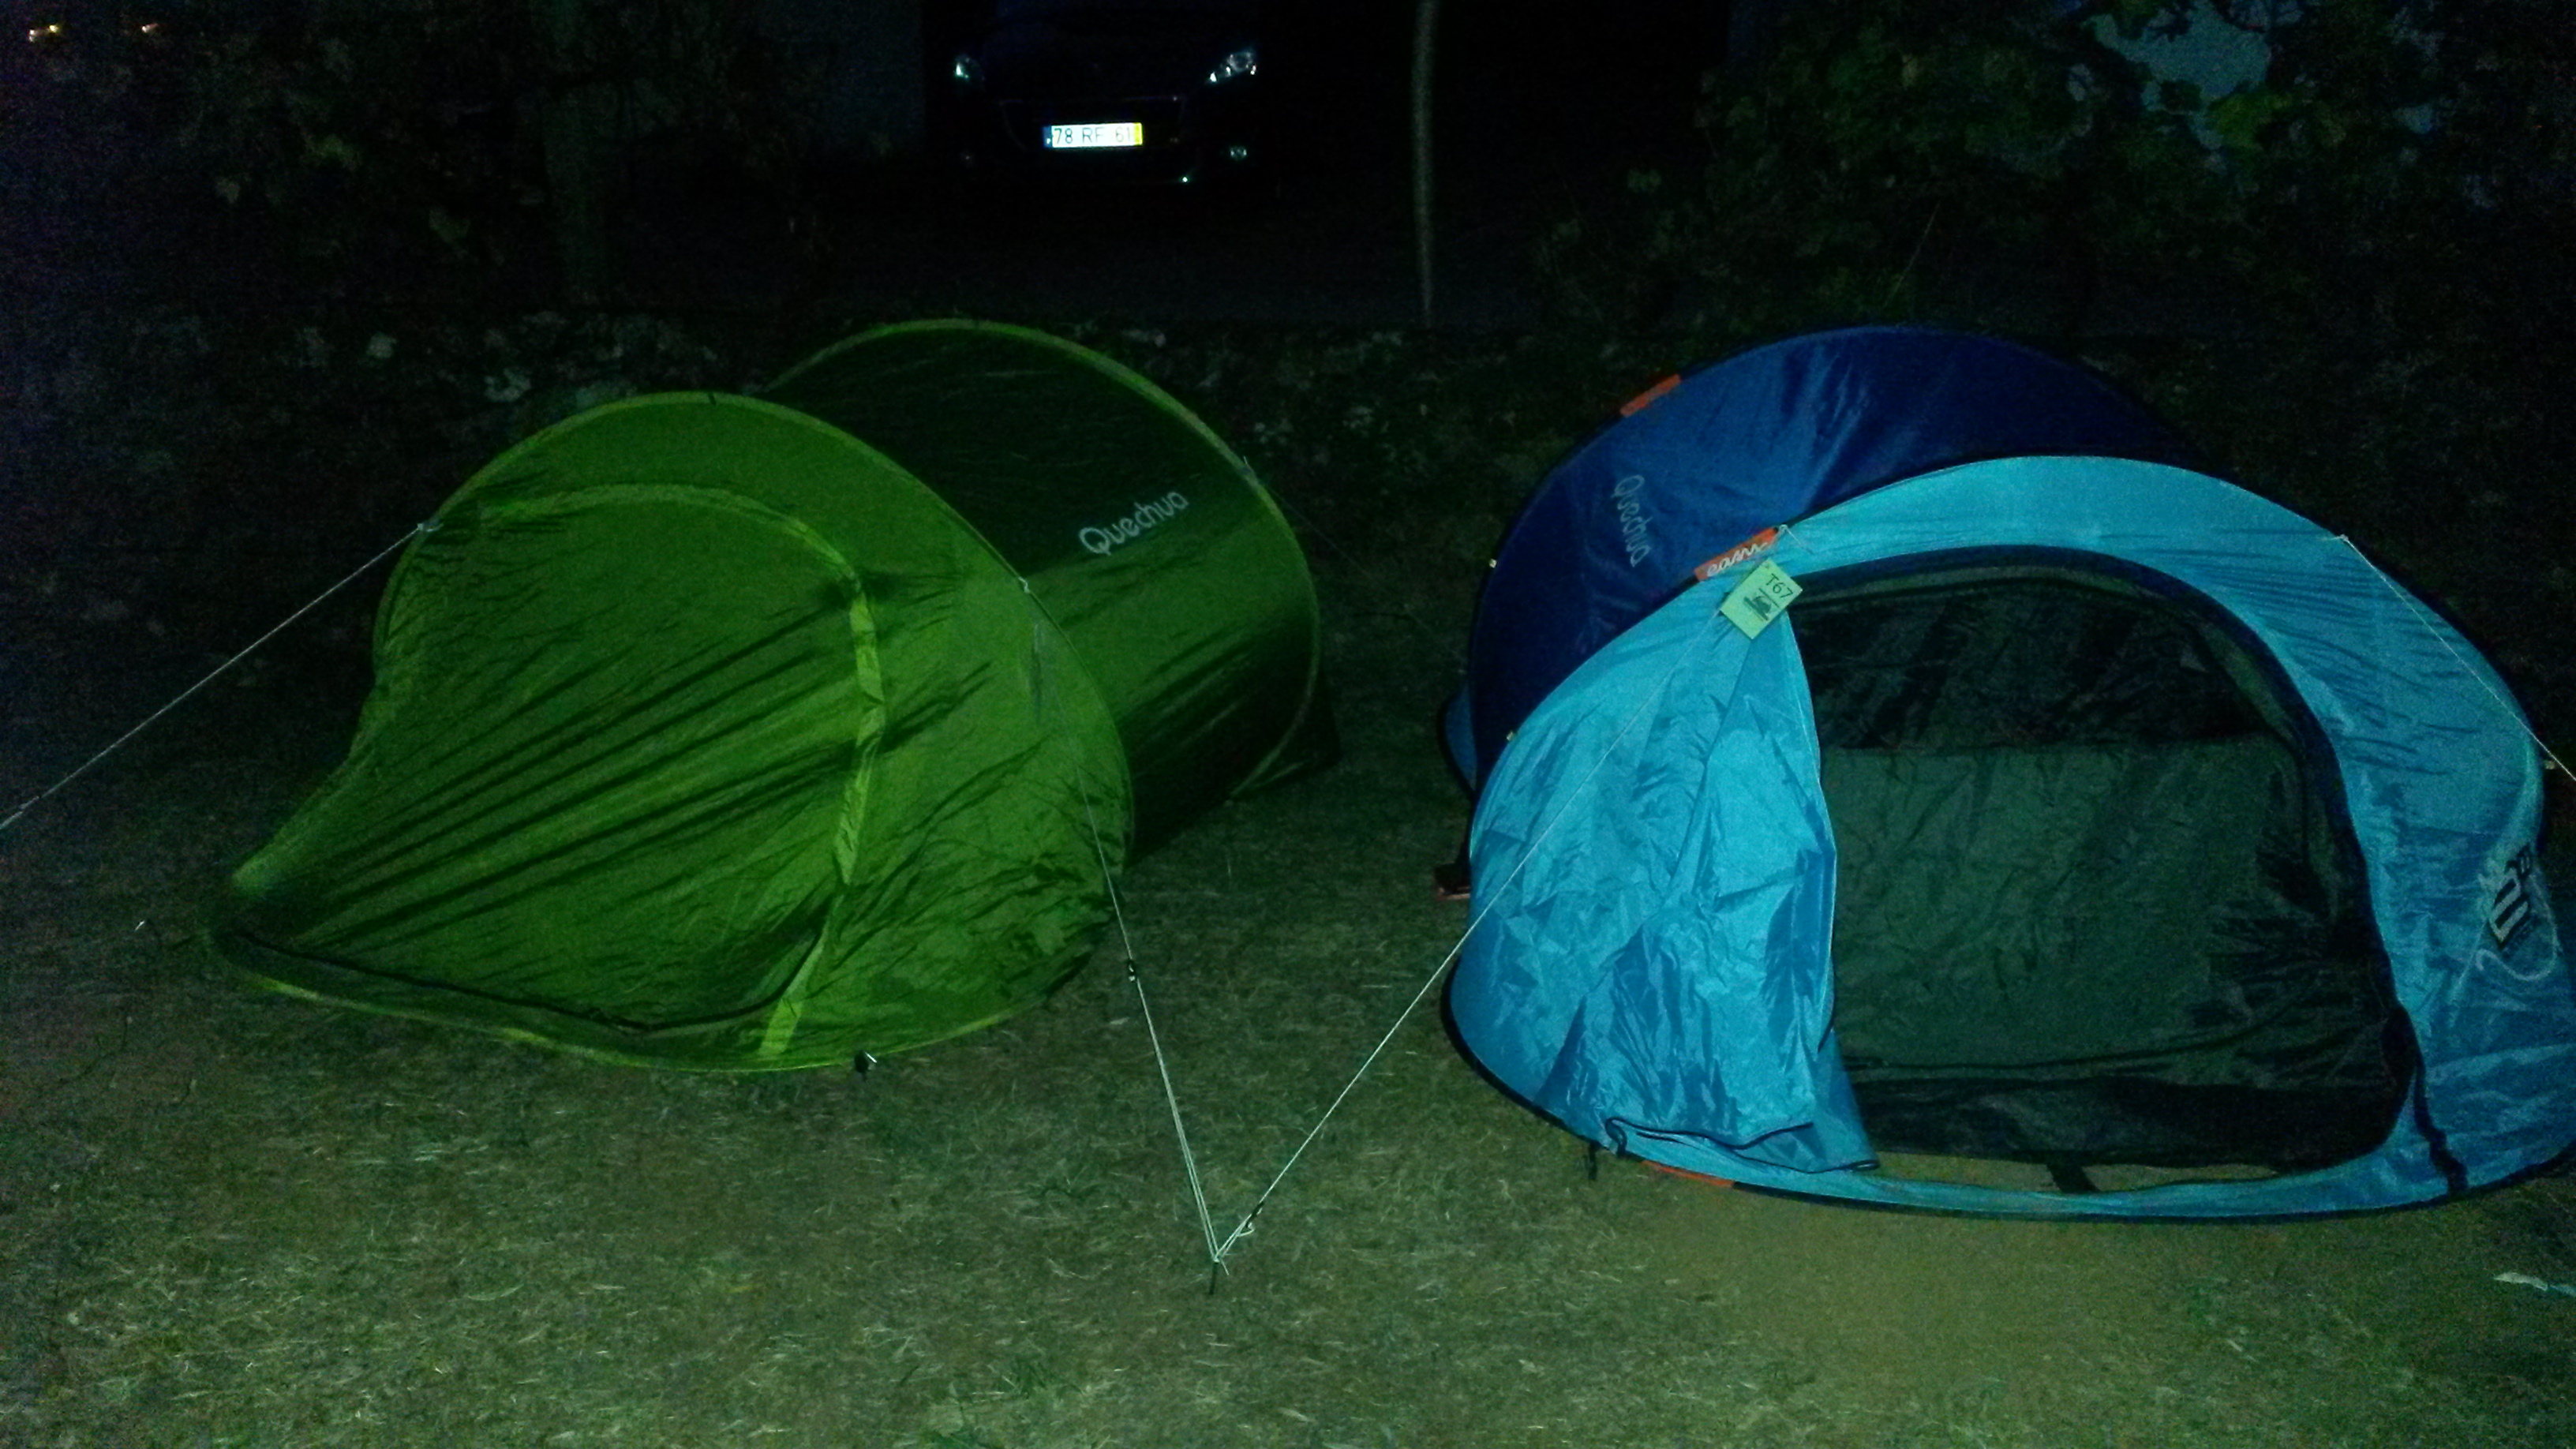 Második este campingben aludtunk, mindössze két sátorban öten.. Nem volt a legkényelmesebb, de legalább nem fáztunk (mondjuk a felül öt - alul három réteg ruha + dupla takaró és polifoam is kellett a teljes komforthoz).